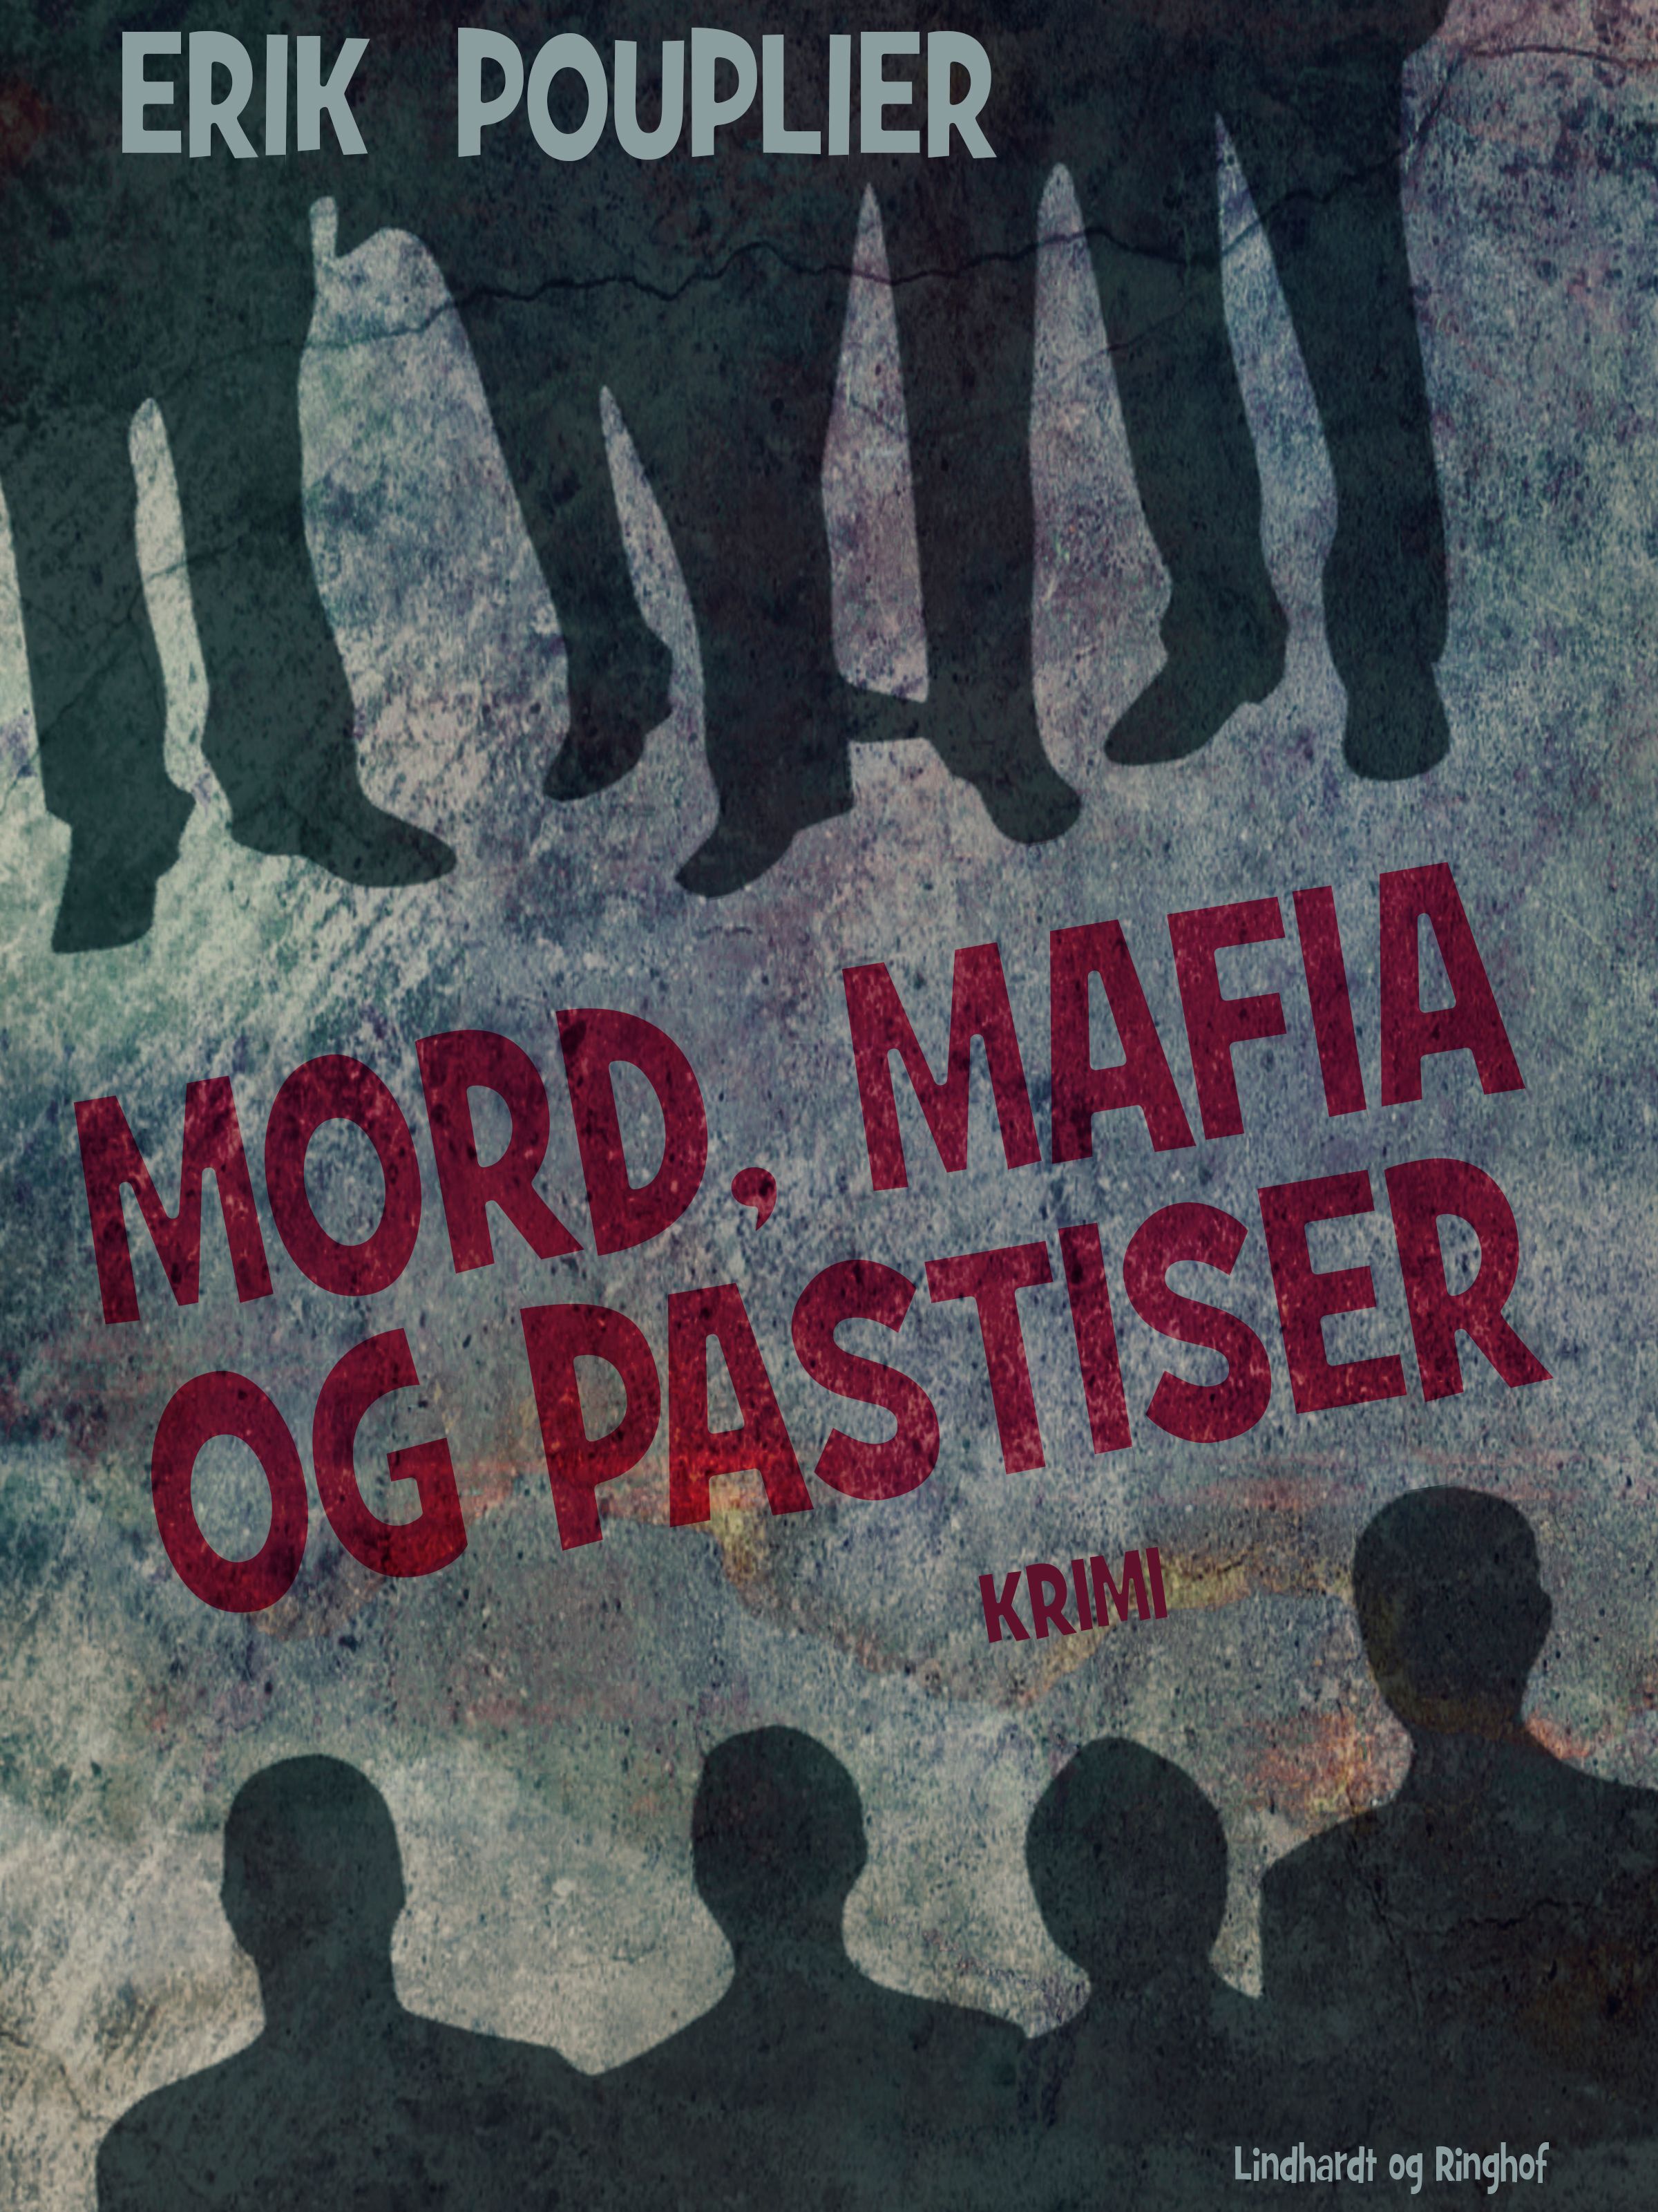 Mord, mafia og pastiser, e-bog af Erik Pouplier